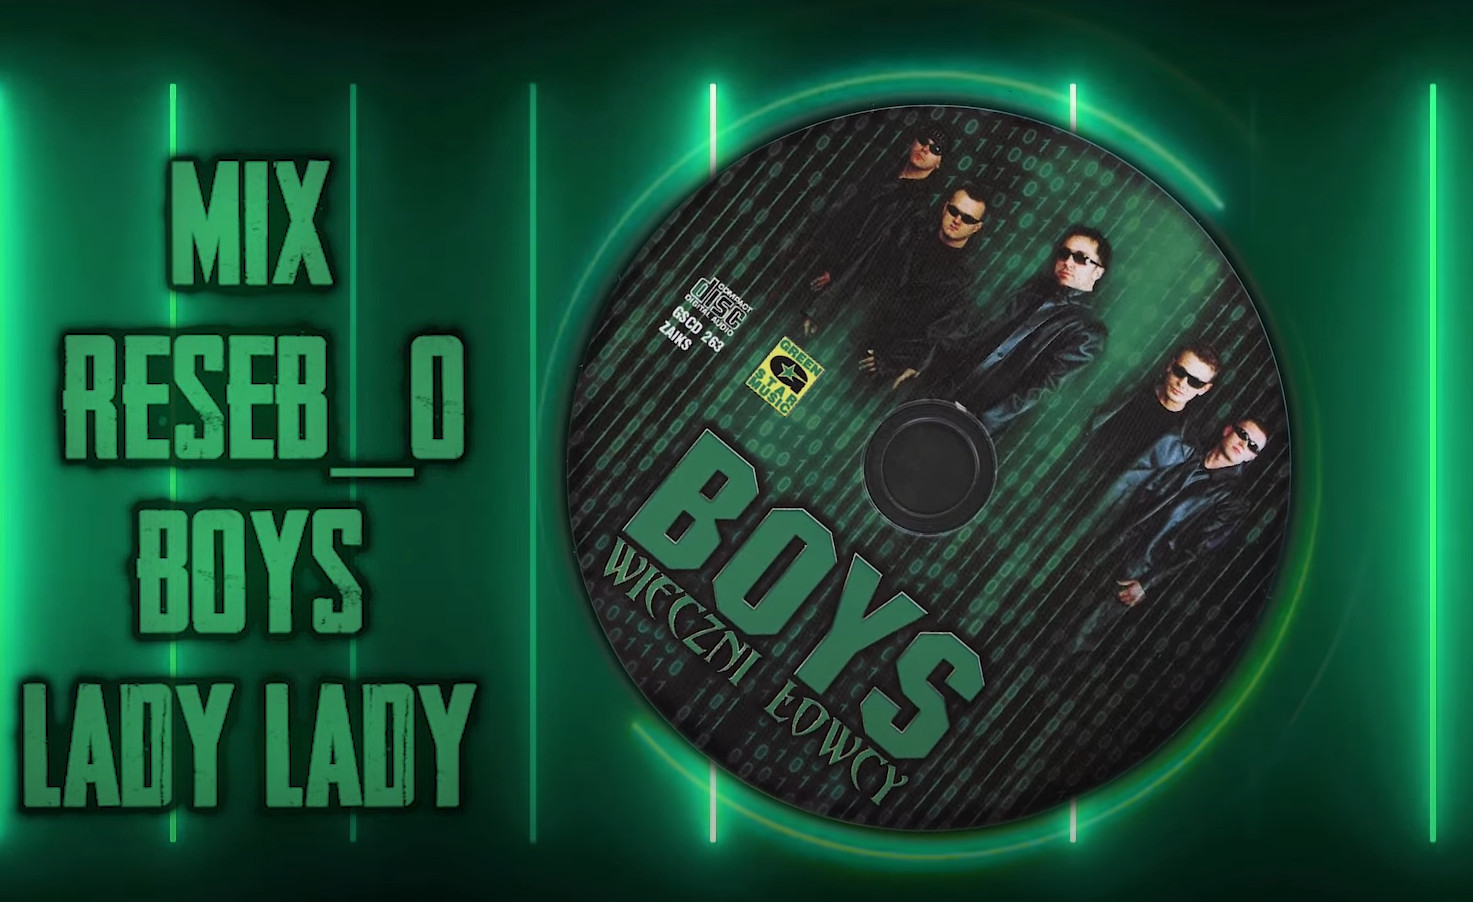 Przebojowy hit zespołu Boys, 'Lady lady', powraca w odświeżonej wersji!